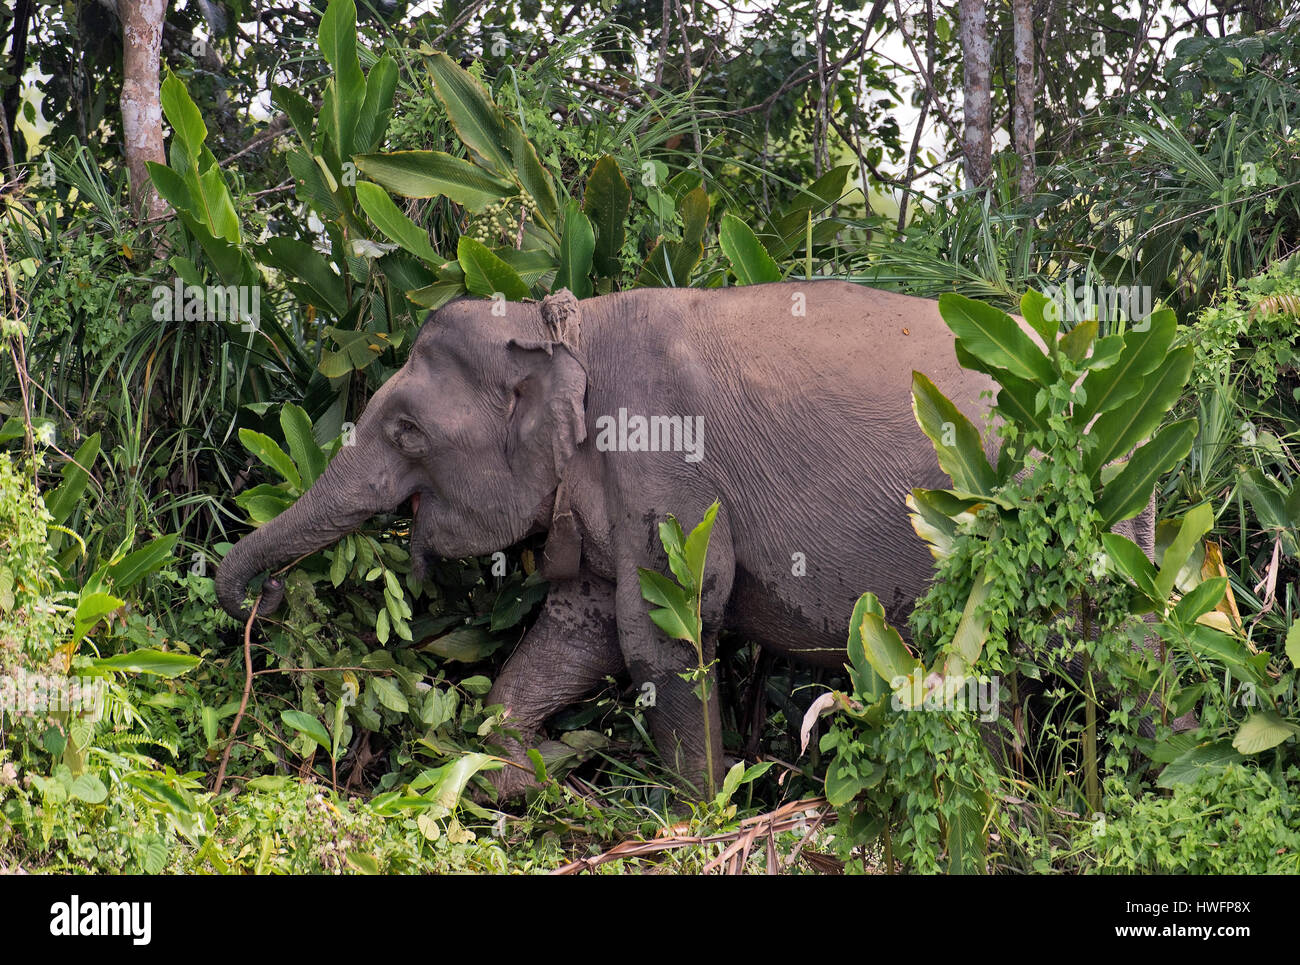 L'éléphant pygmée Bornéo (Elephas maximus borneensis) de la rivière Kinabatangan, Sabah, Bornéo. Remarque Le collier monté par les gardes du parc pour le suivi de l'un Banque D'Images